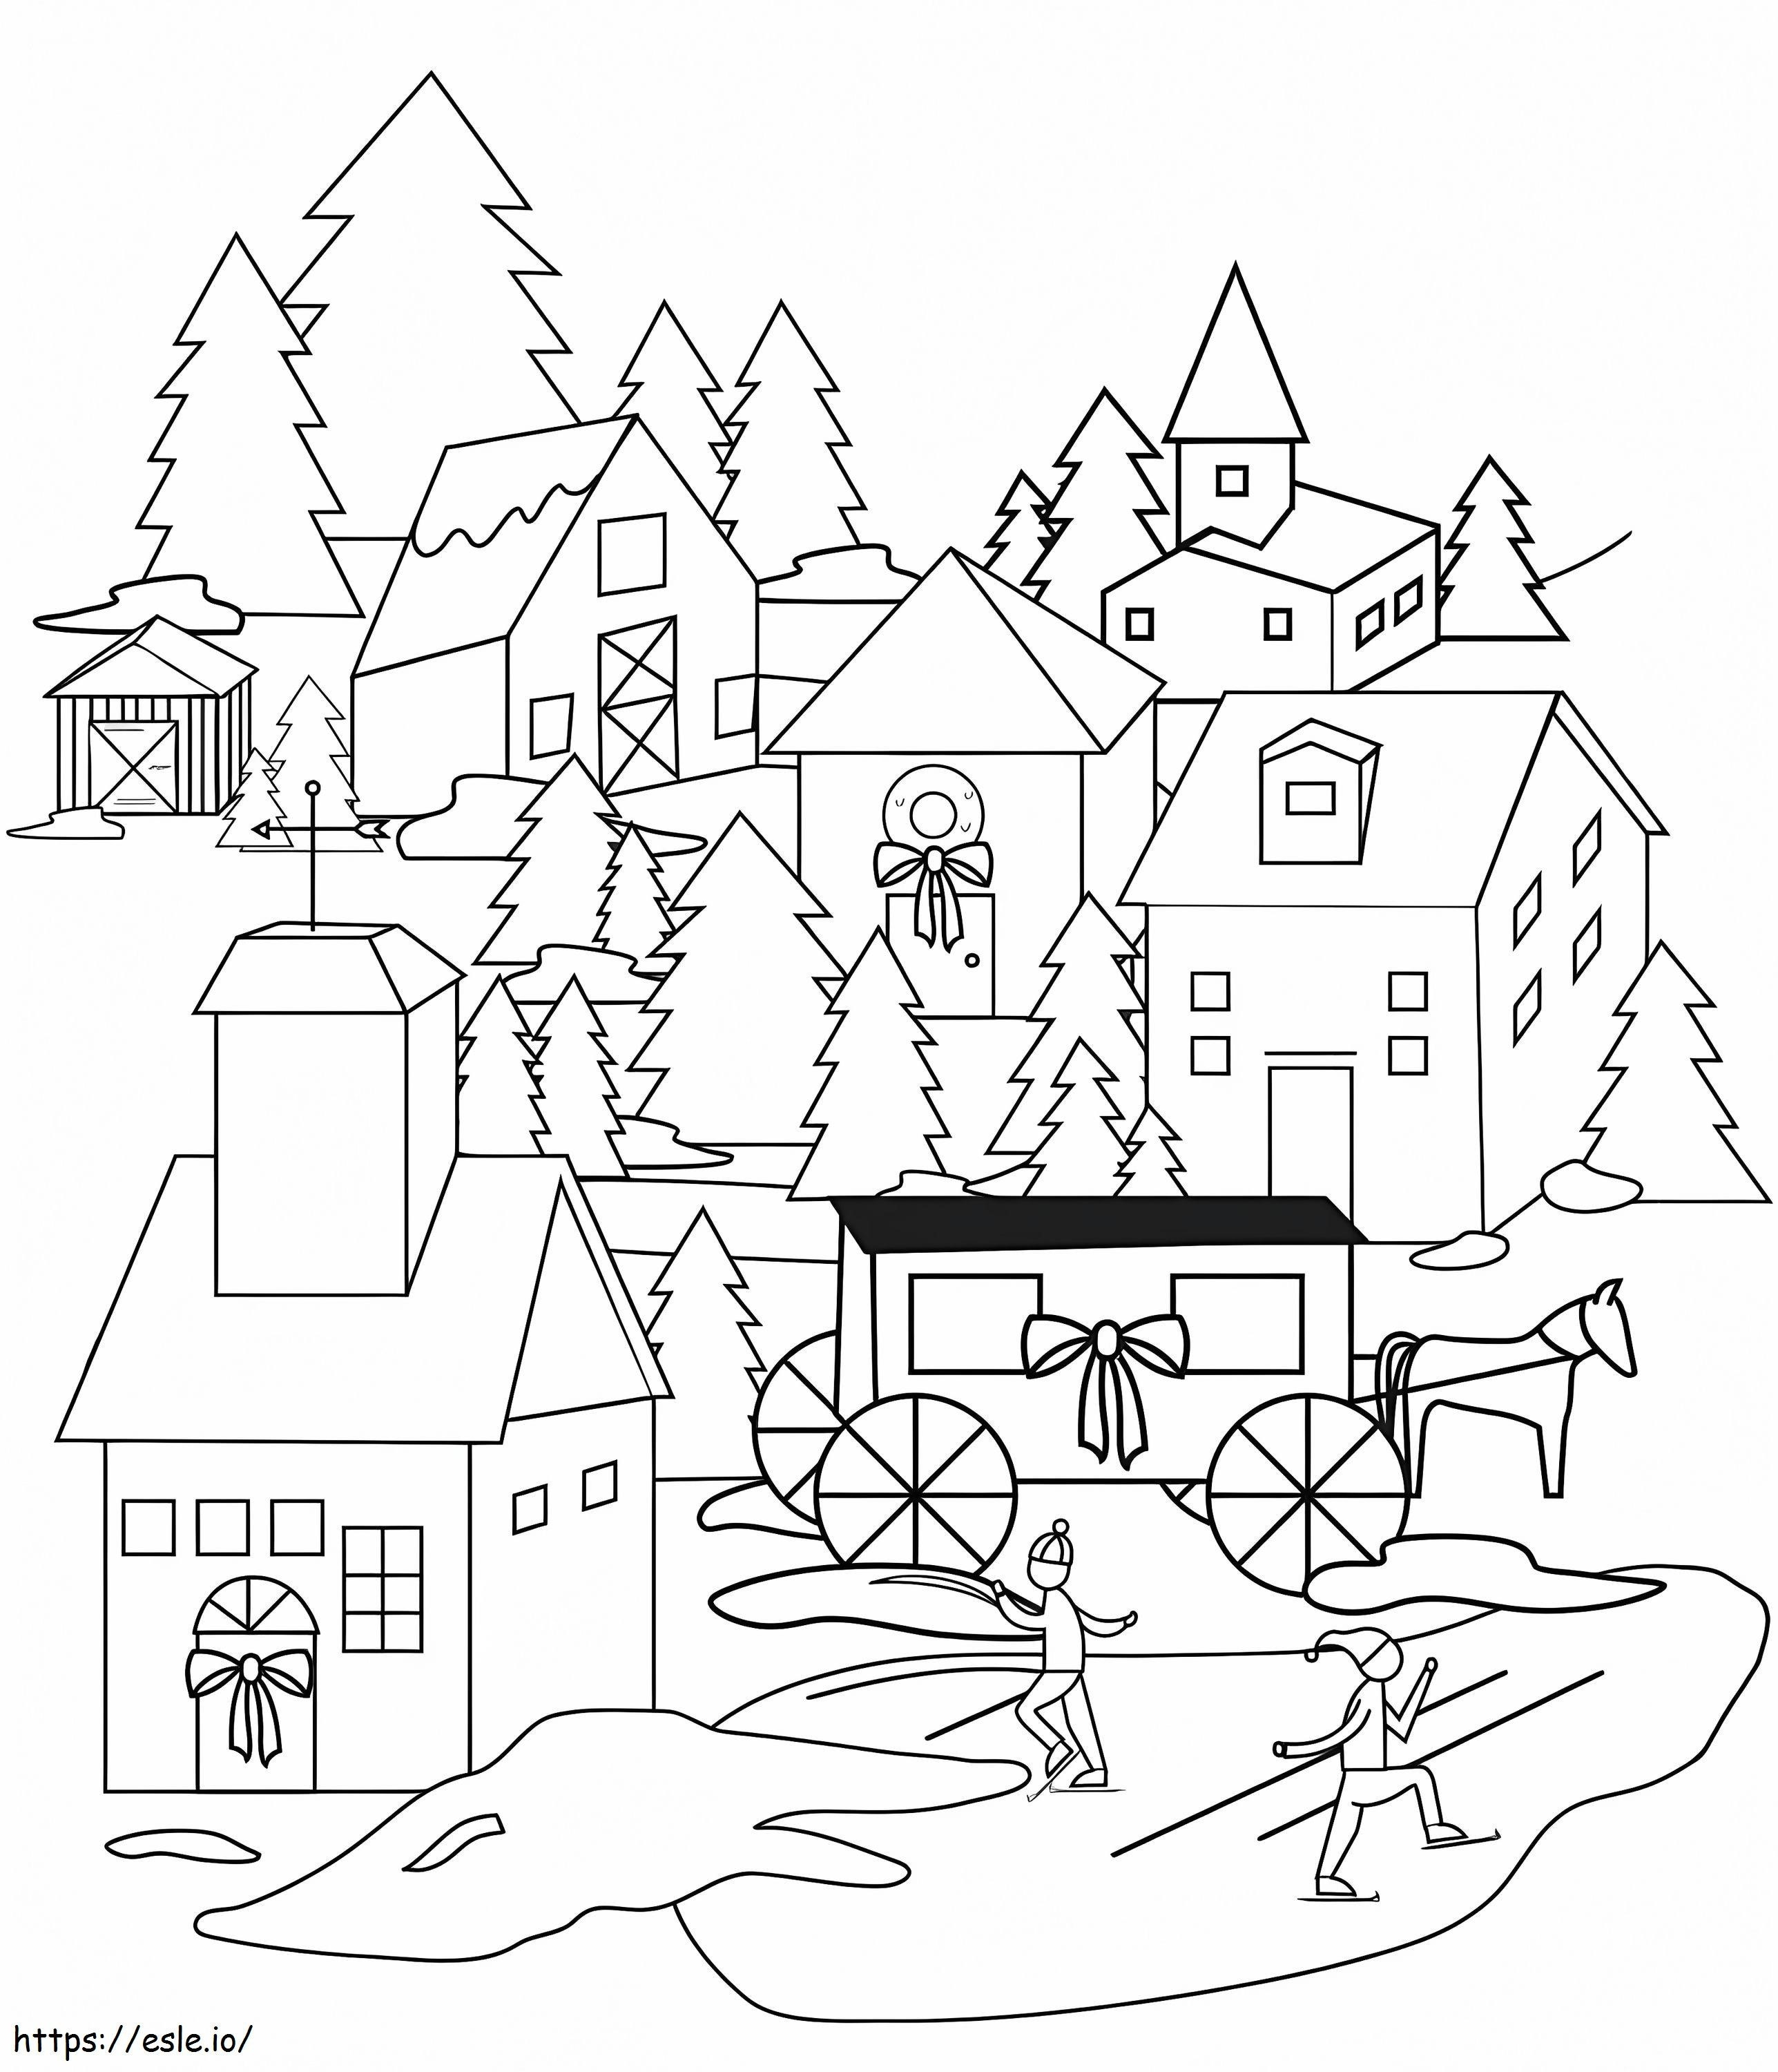 Coloriage Village de Noël à imprimer dessin